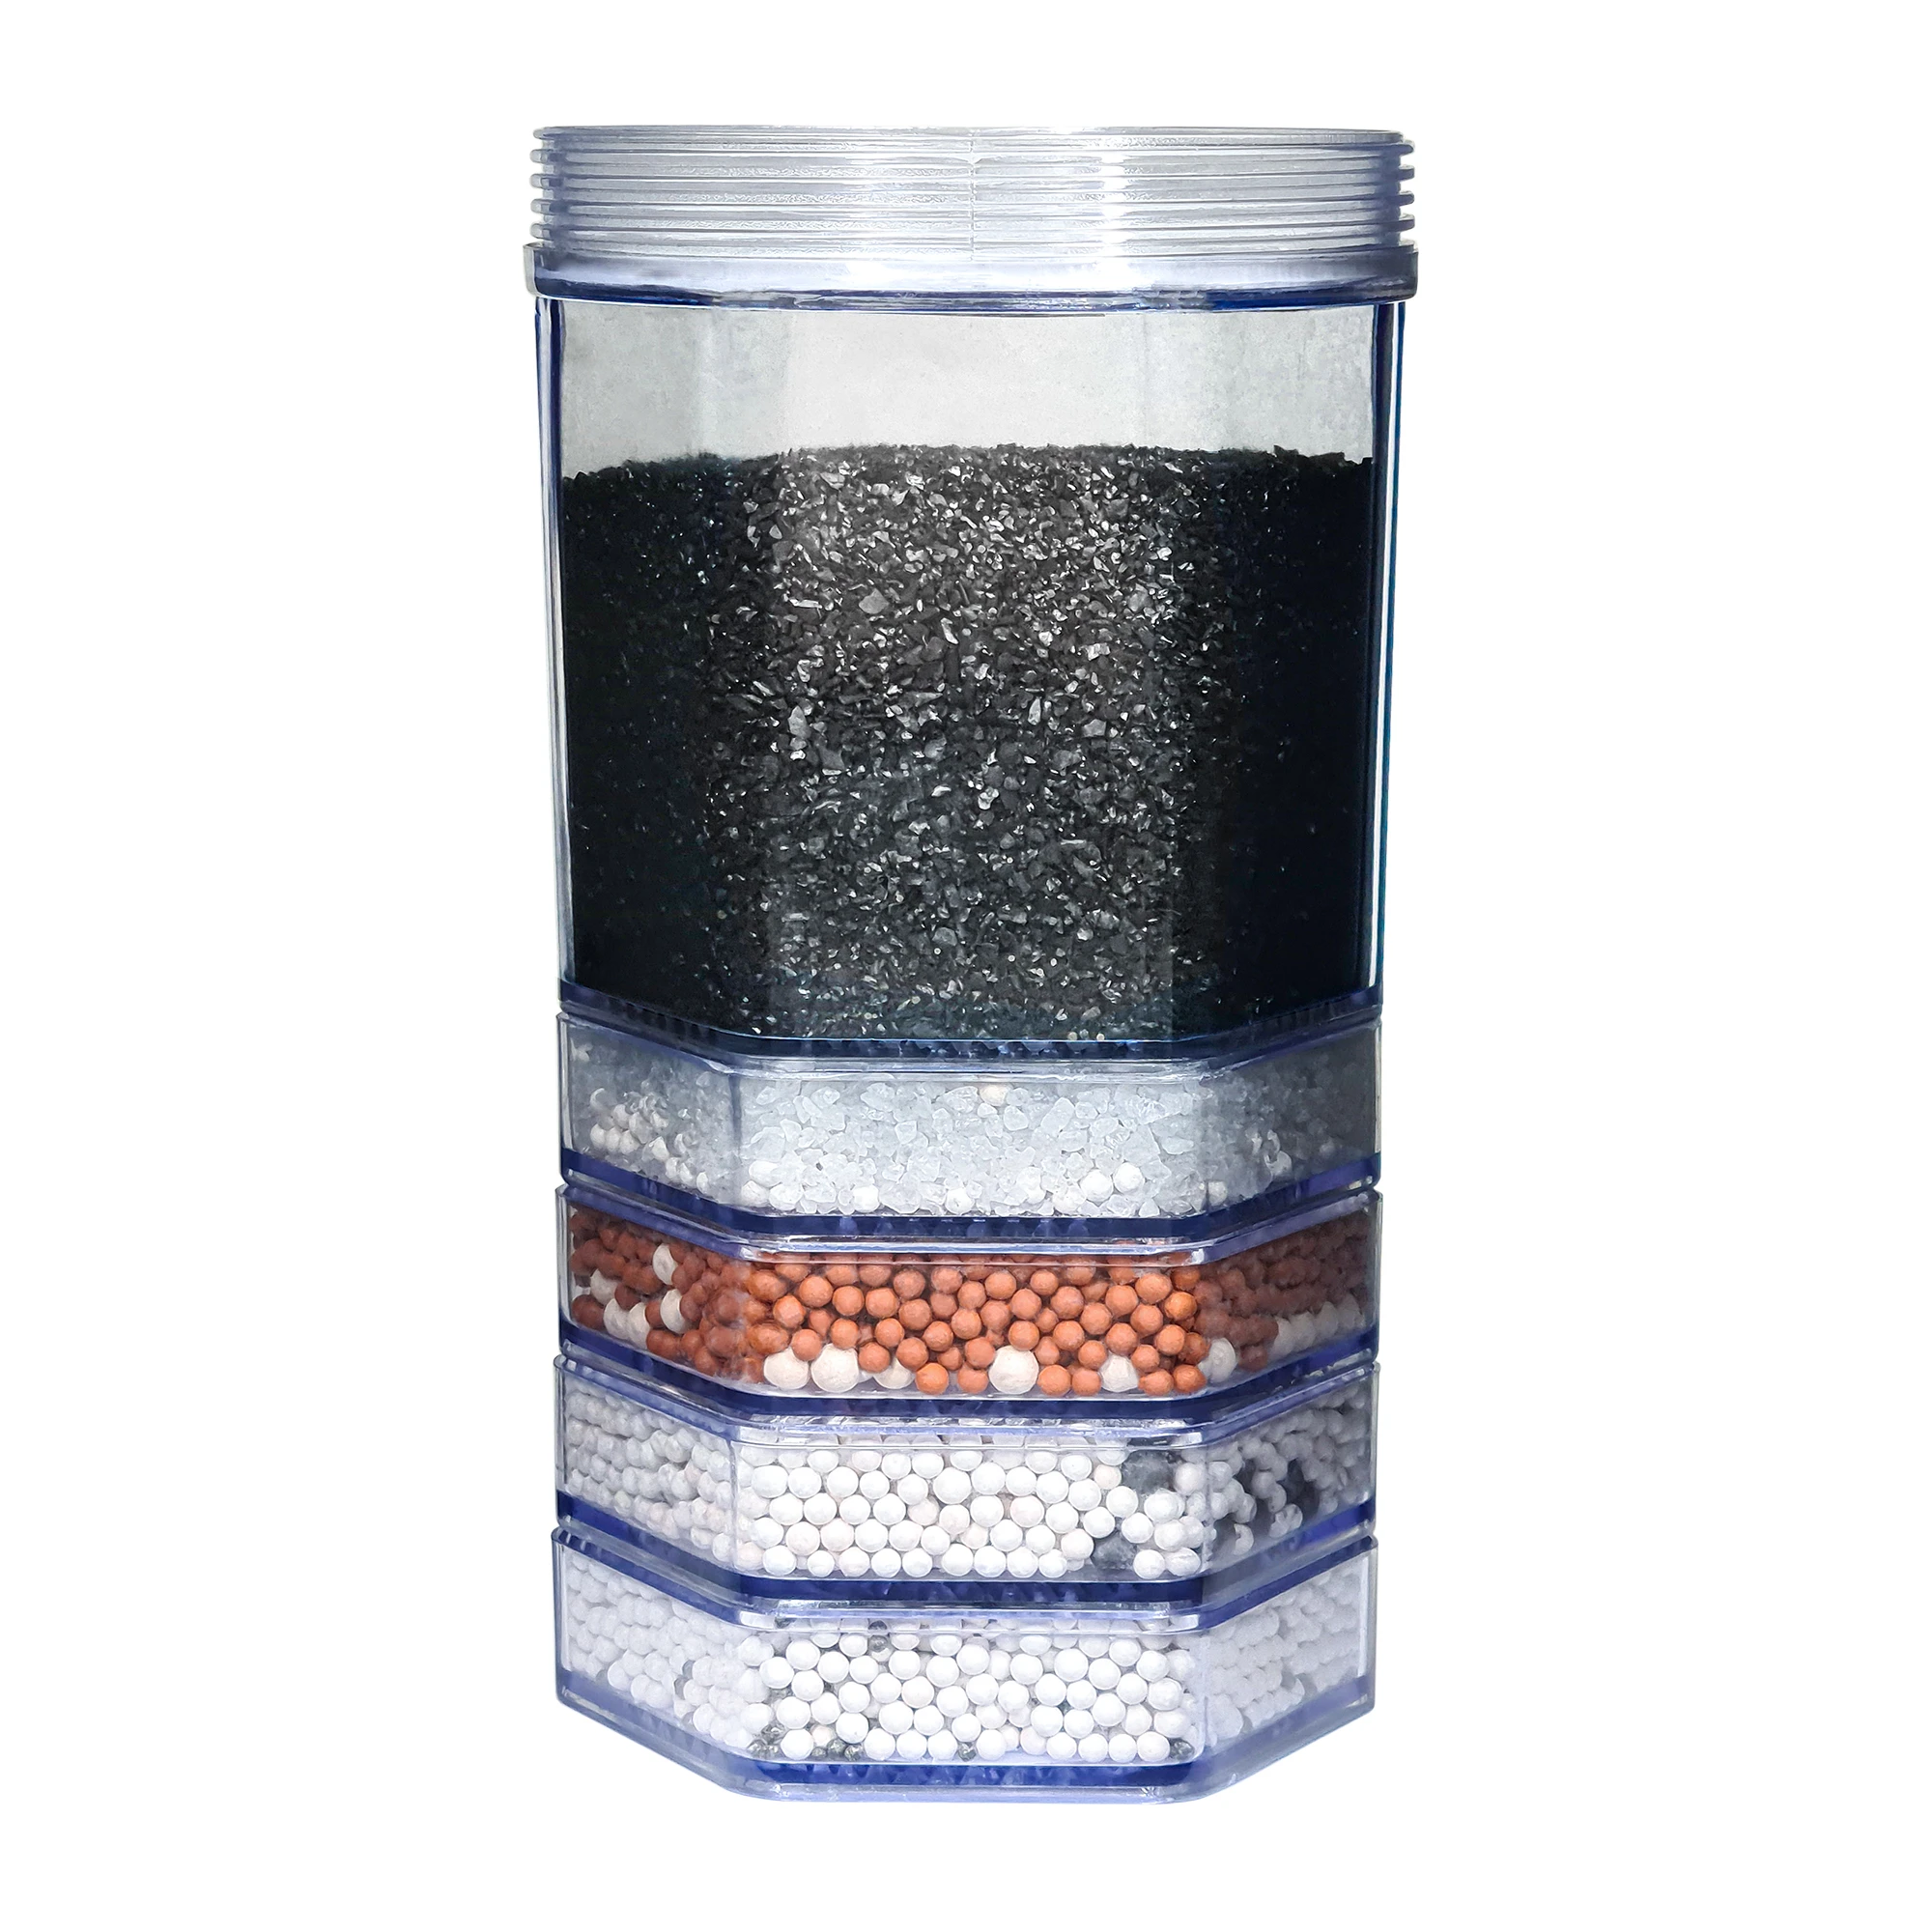 Zu sehen ist eine Filterkartusche für den Acala Stand Wasserfilter Advanced. Sie hat 5 separate Schichten. In der ersten ist schwarze Aktivkohle, in der zweiten sind weiße Kristalle und in den letzten drei sind rote, weiße und schwarze Kügelchen.